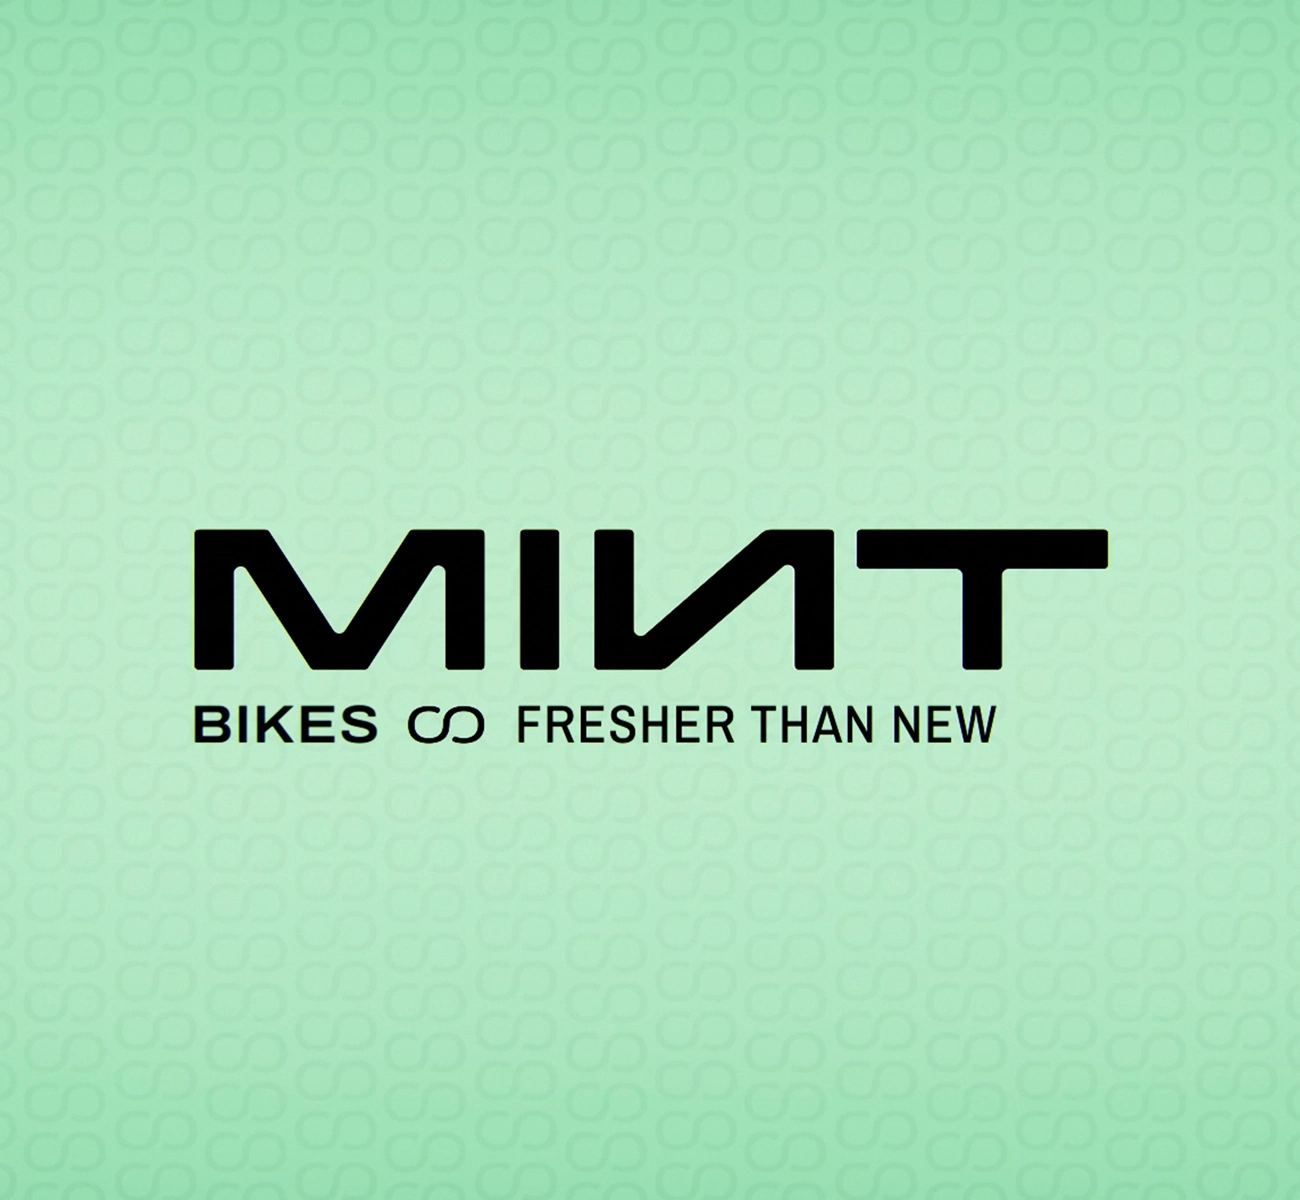 Image couverture animation 2D vectorielle marque Mint bikes page potfolio